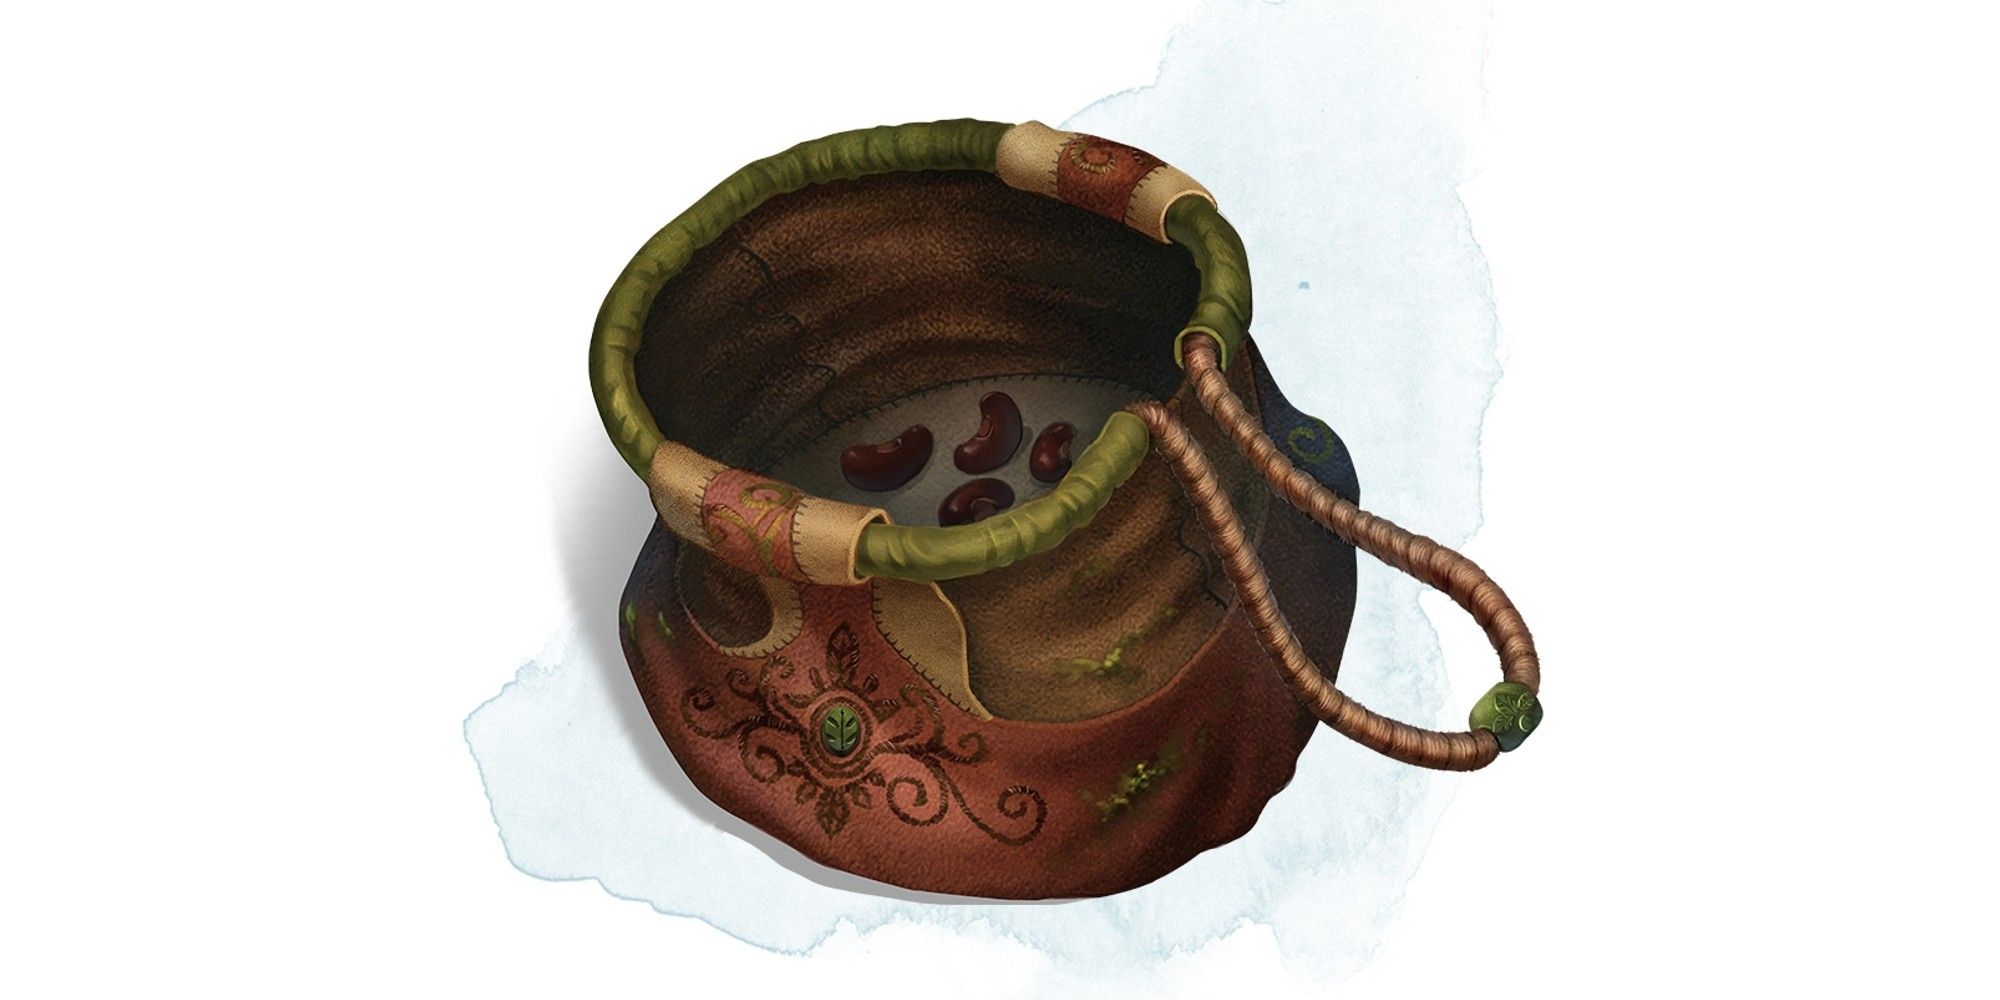 D&D Bag of Beans item, uma pequena sacola de pano onde alguns feijões podem ser vistos dentro.